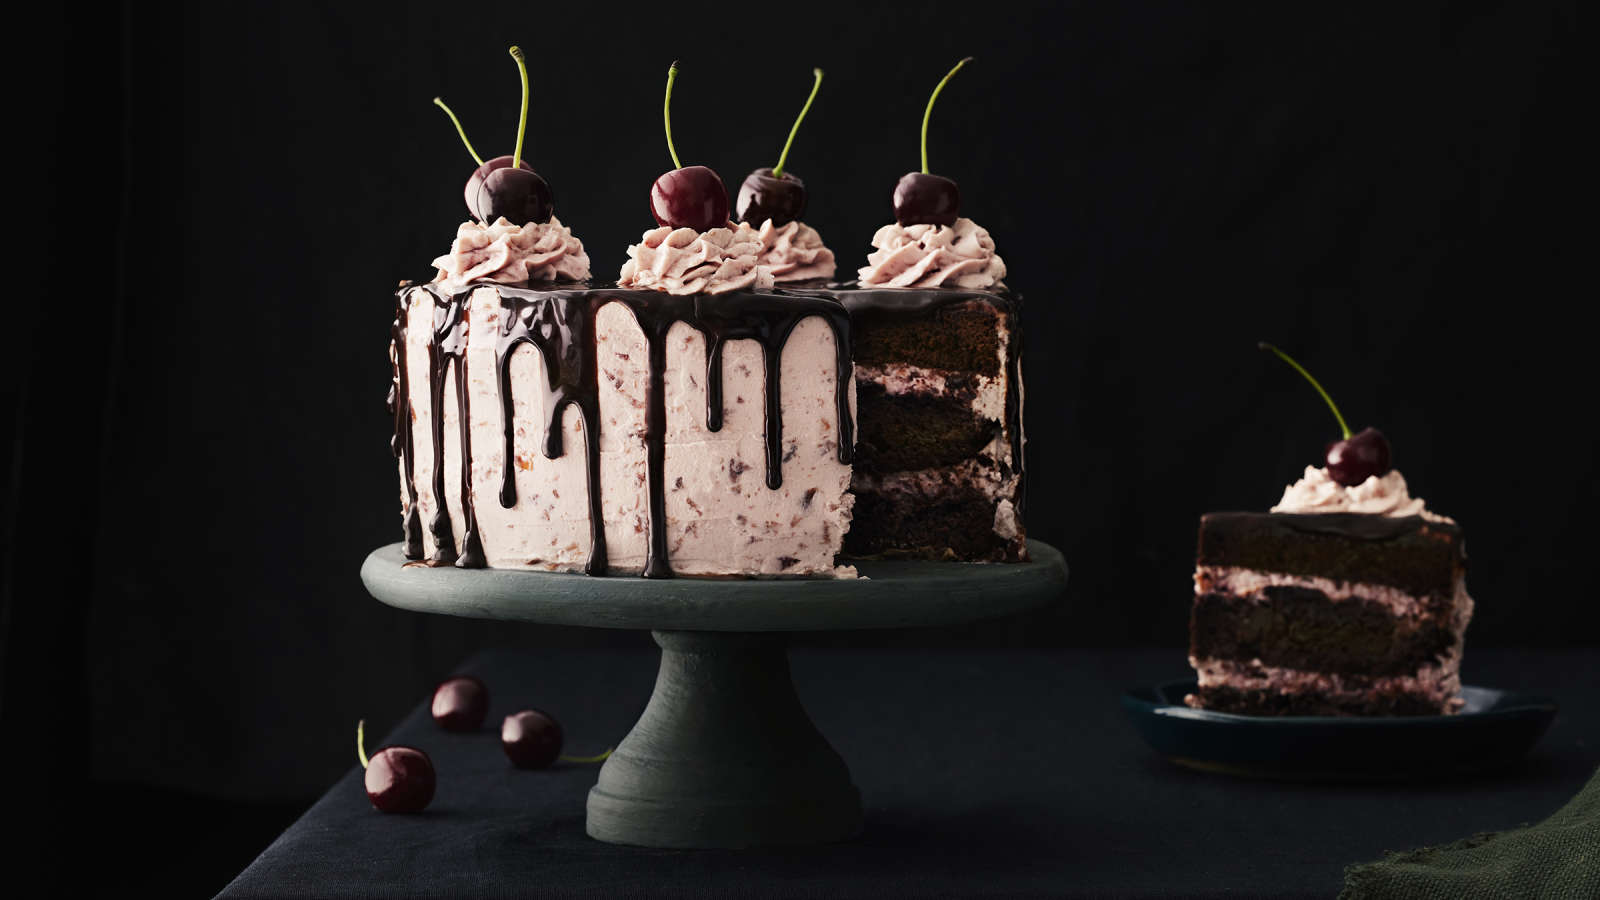 Tuoreilla kirsikoilla, pursotuksilla ja sulatetulla suklaalla koristeltu suklaa-kirsikkakakku tummalla, jalallisella kakkuvadilla. Kakusta leikattu pala lautaselle.